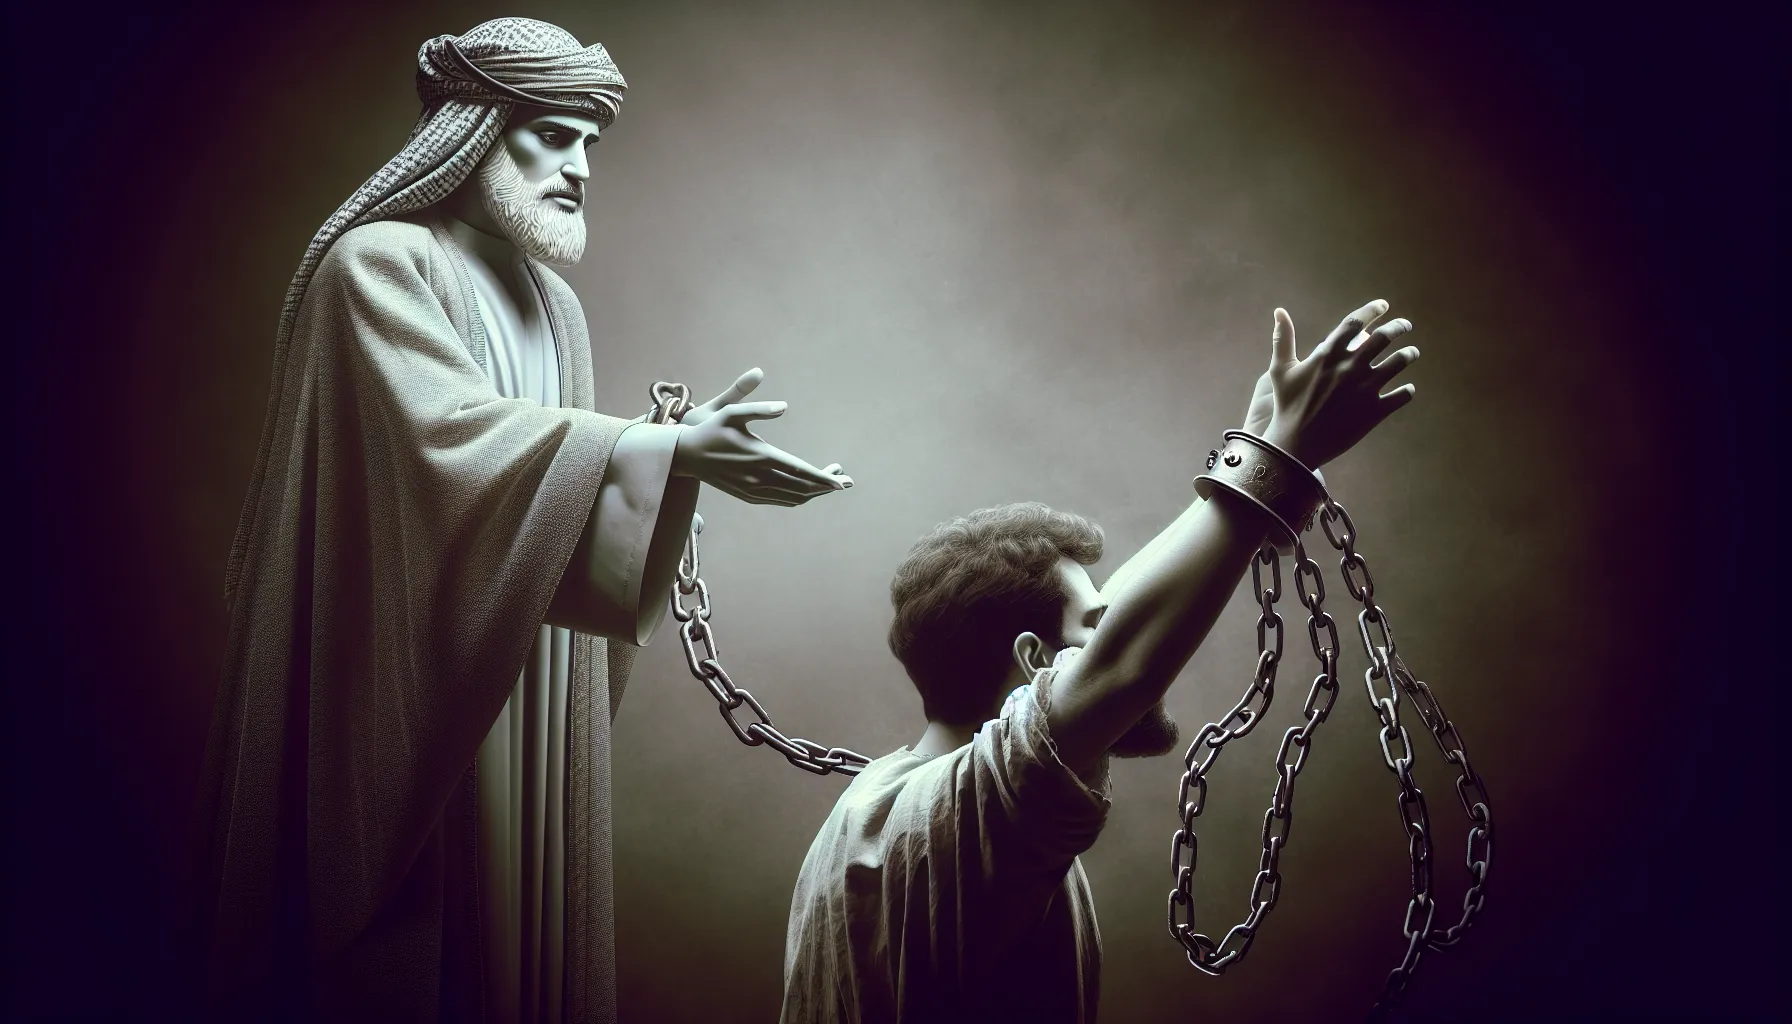 Representación gráfica de Jesucristo extendiendo su mano hacia una persona que se encuentra atrapada en cadenas